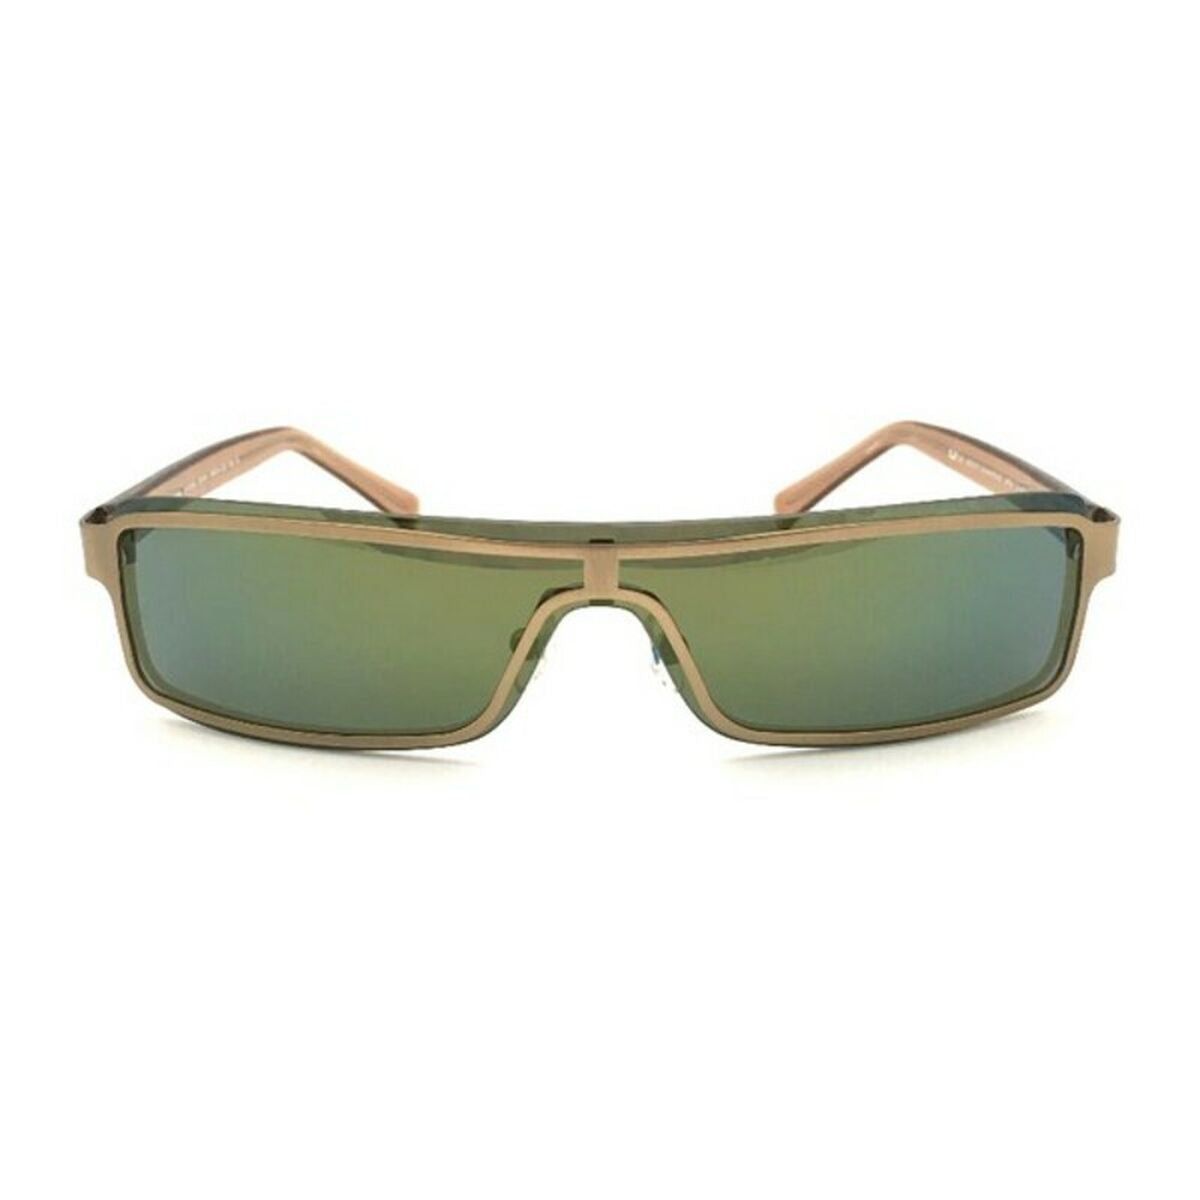 Ladies'Sunglasses Adolfo Dominguez